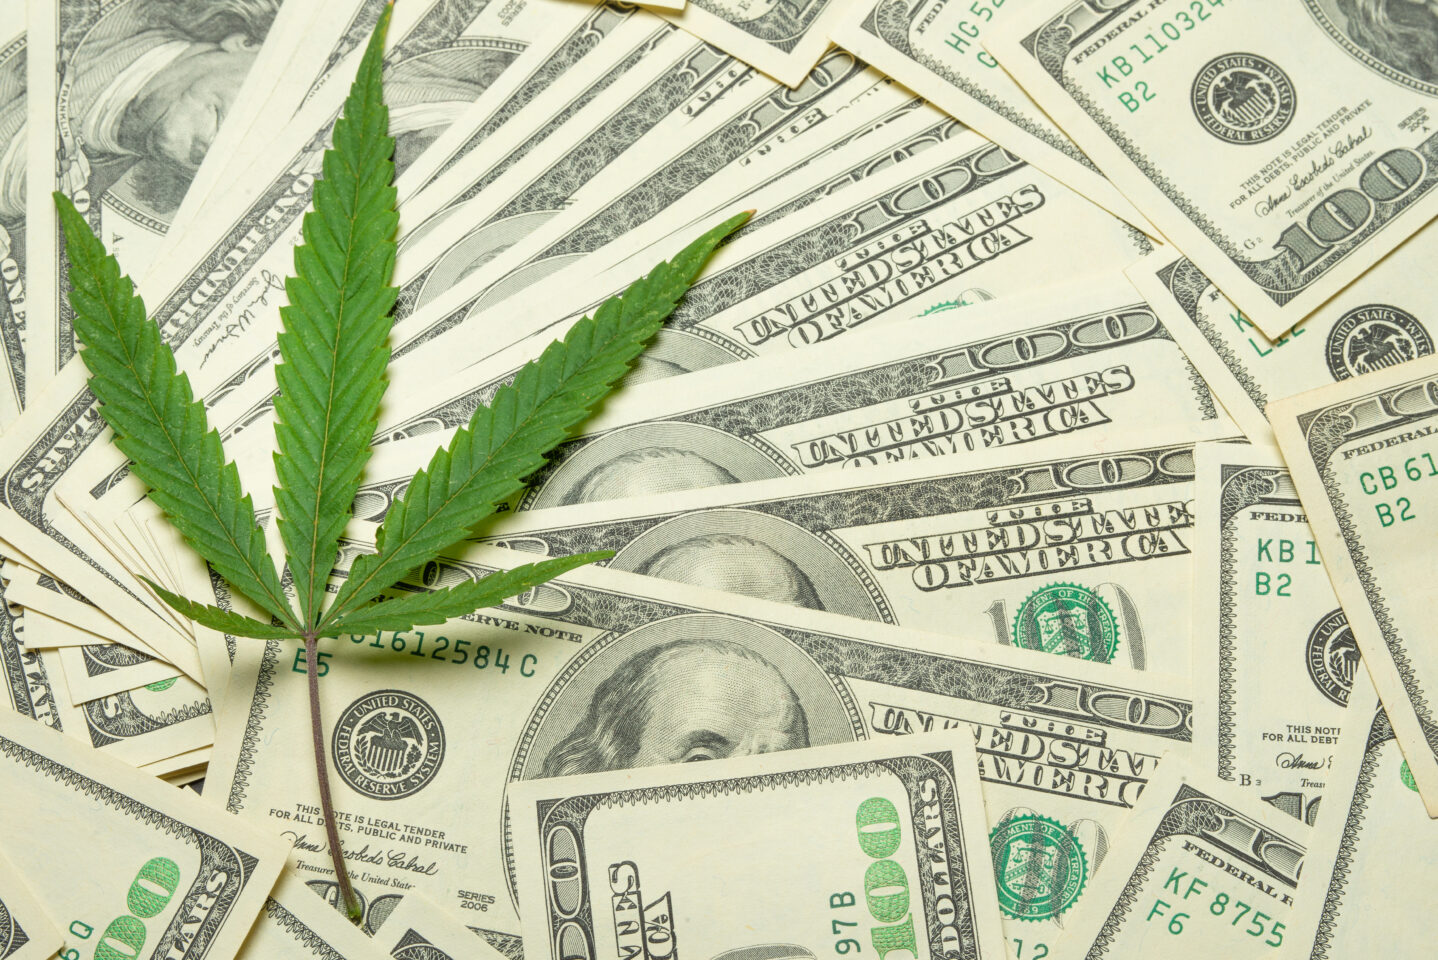 St. Louis nie zebrało 500,000 XNUMX dolarów z podatku od marihuany